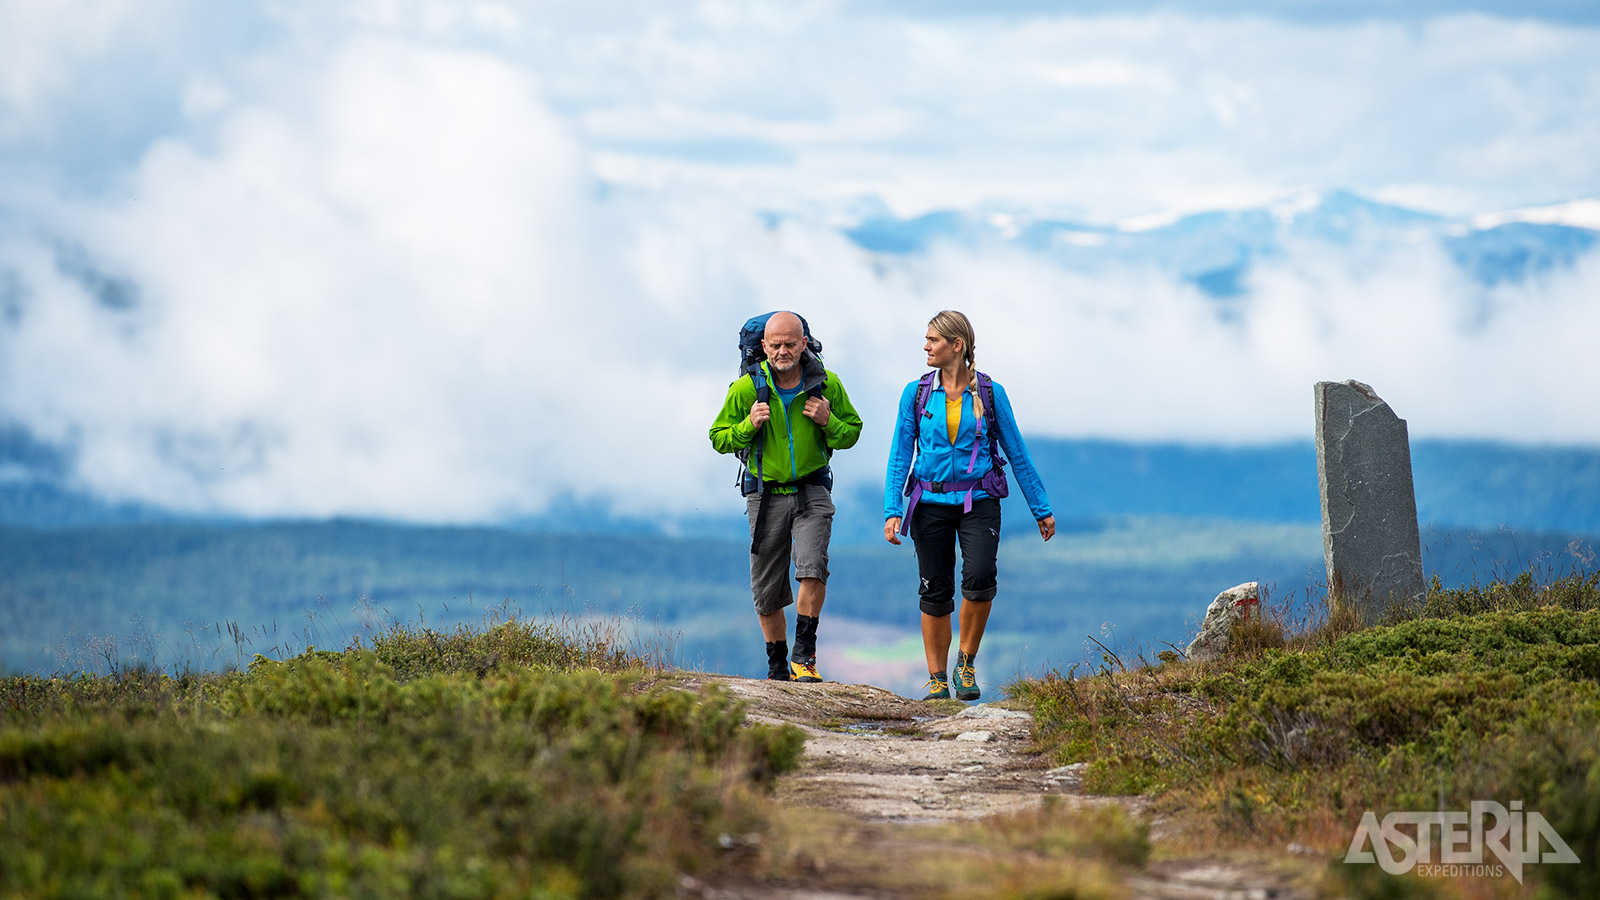 Zorgeloos wandelen in één van de oudste nationale parken van Noorwegen